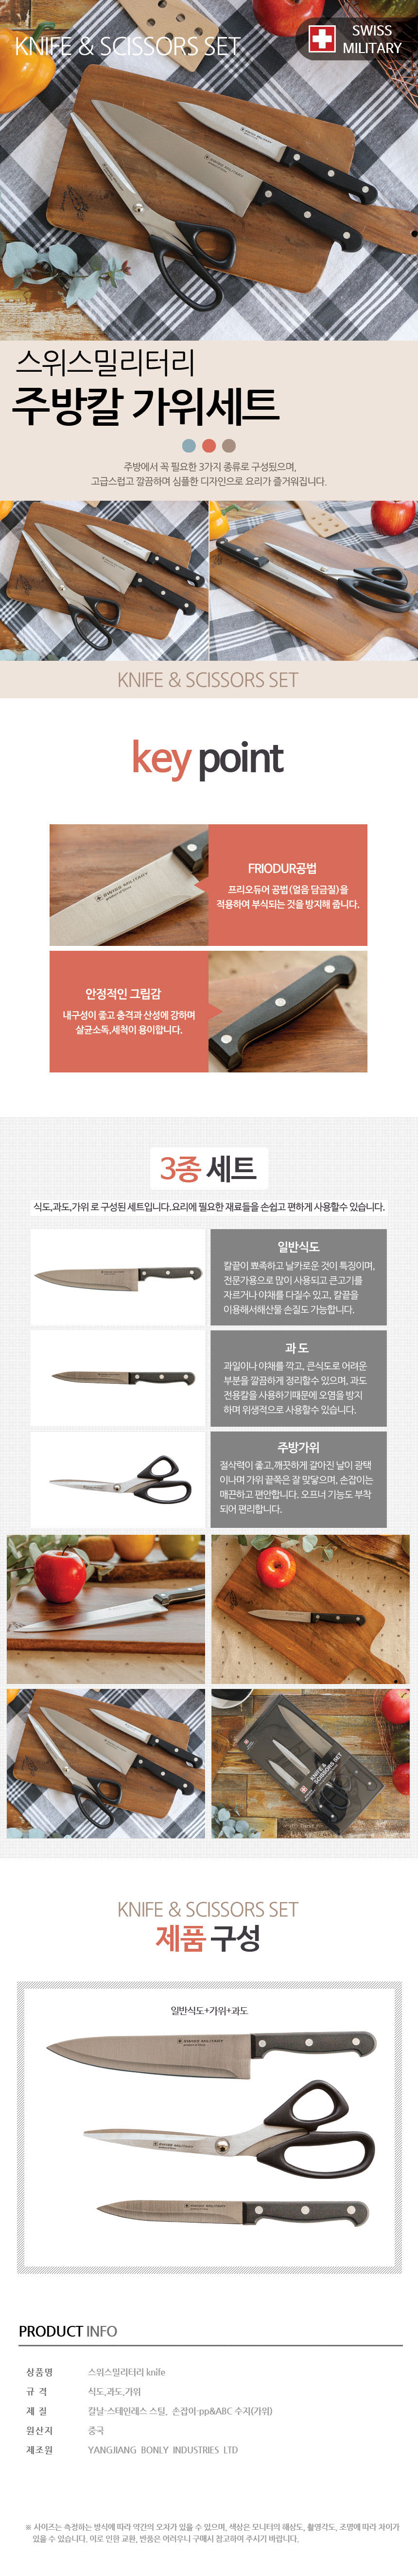 knife_detail.jpg